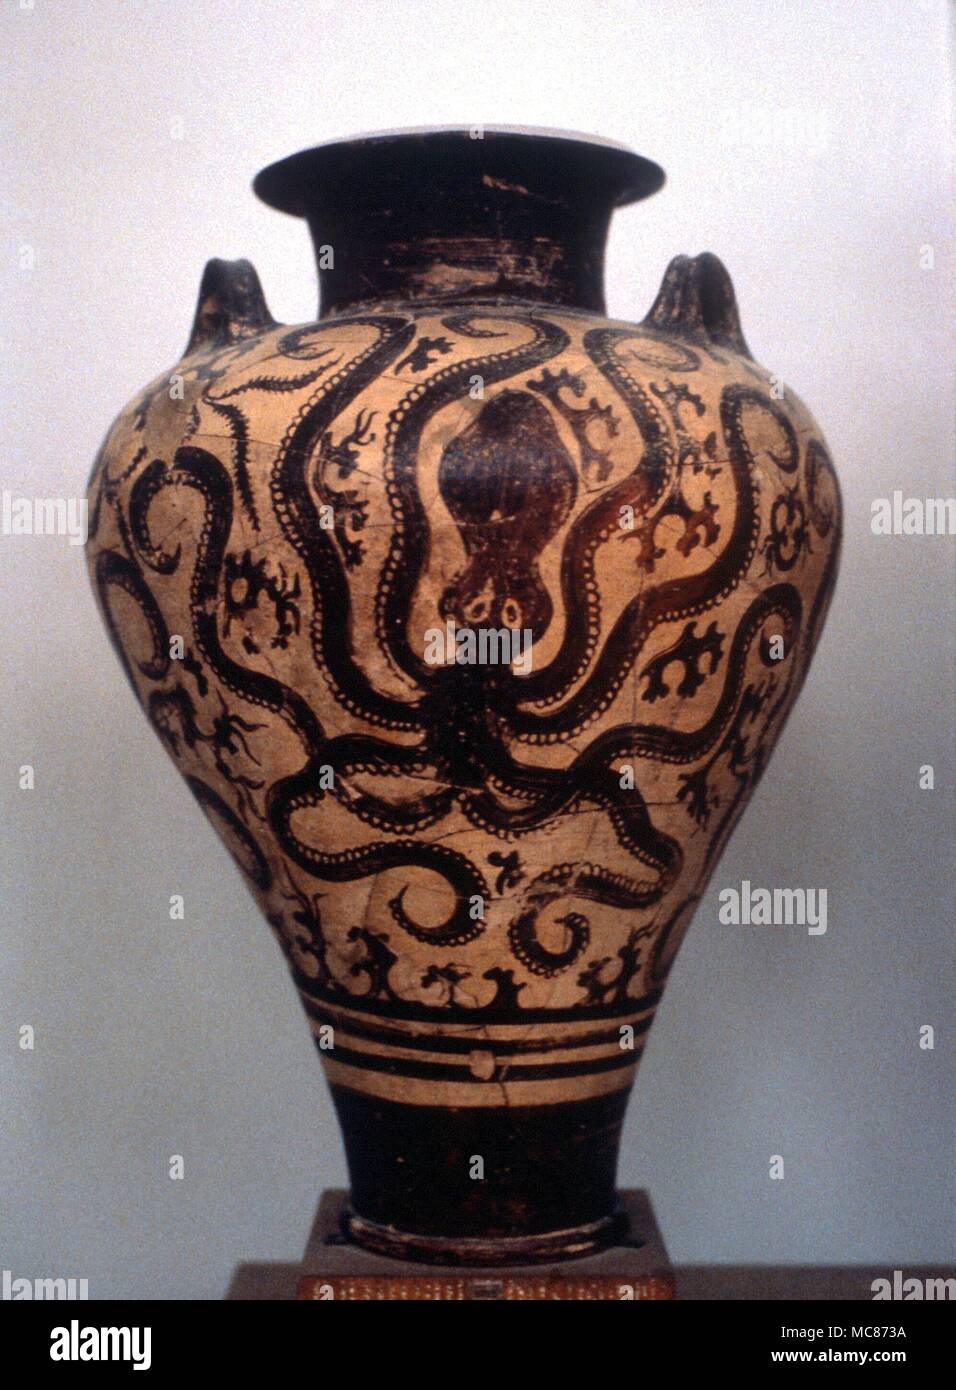 Animaux - Octopus peint sur un vase de Crète. Musée d'Héraklion, Crète Banque D'Images